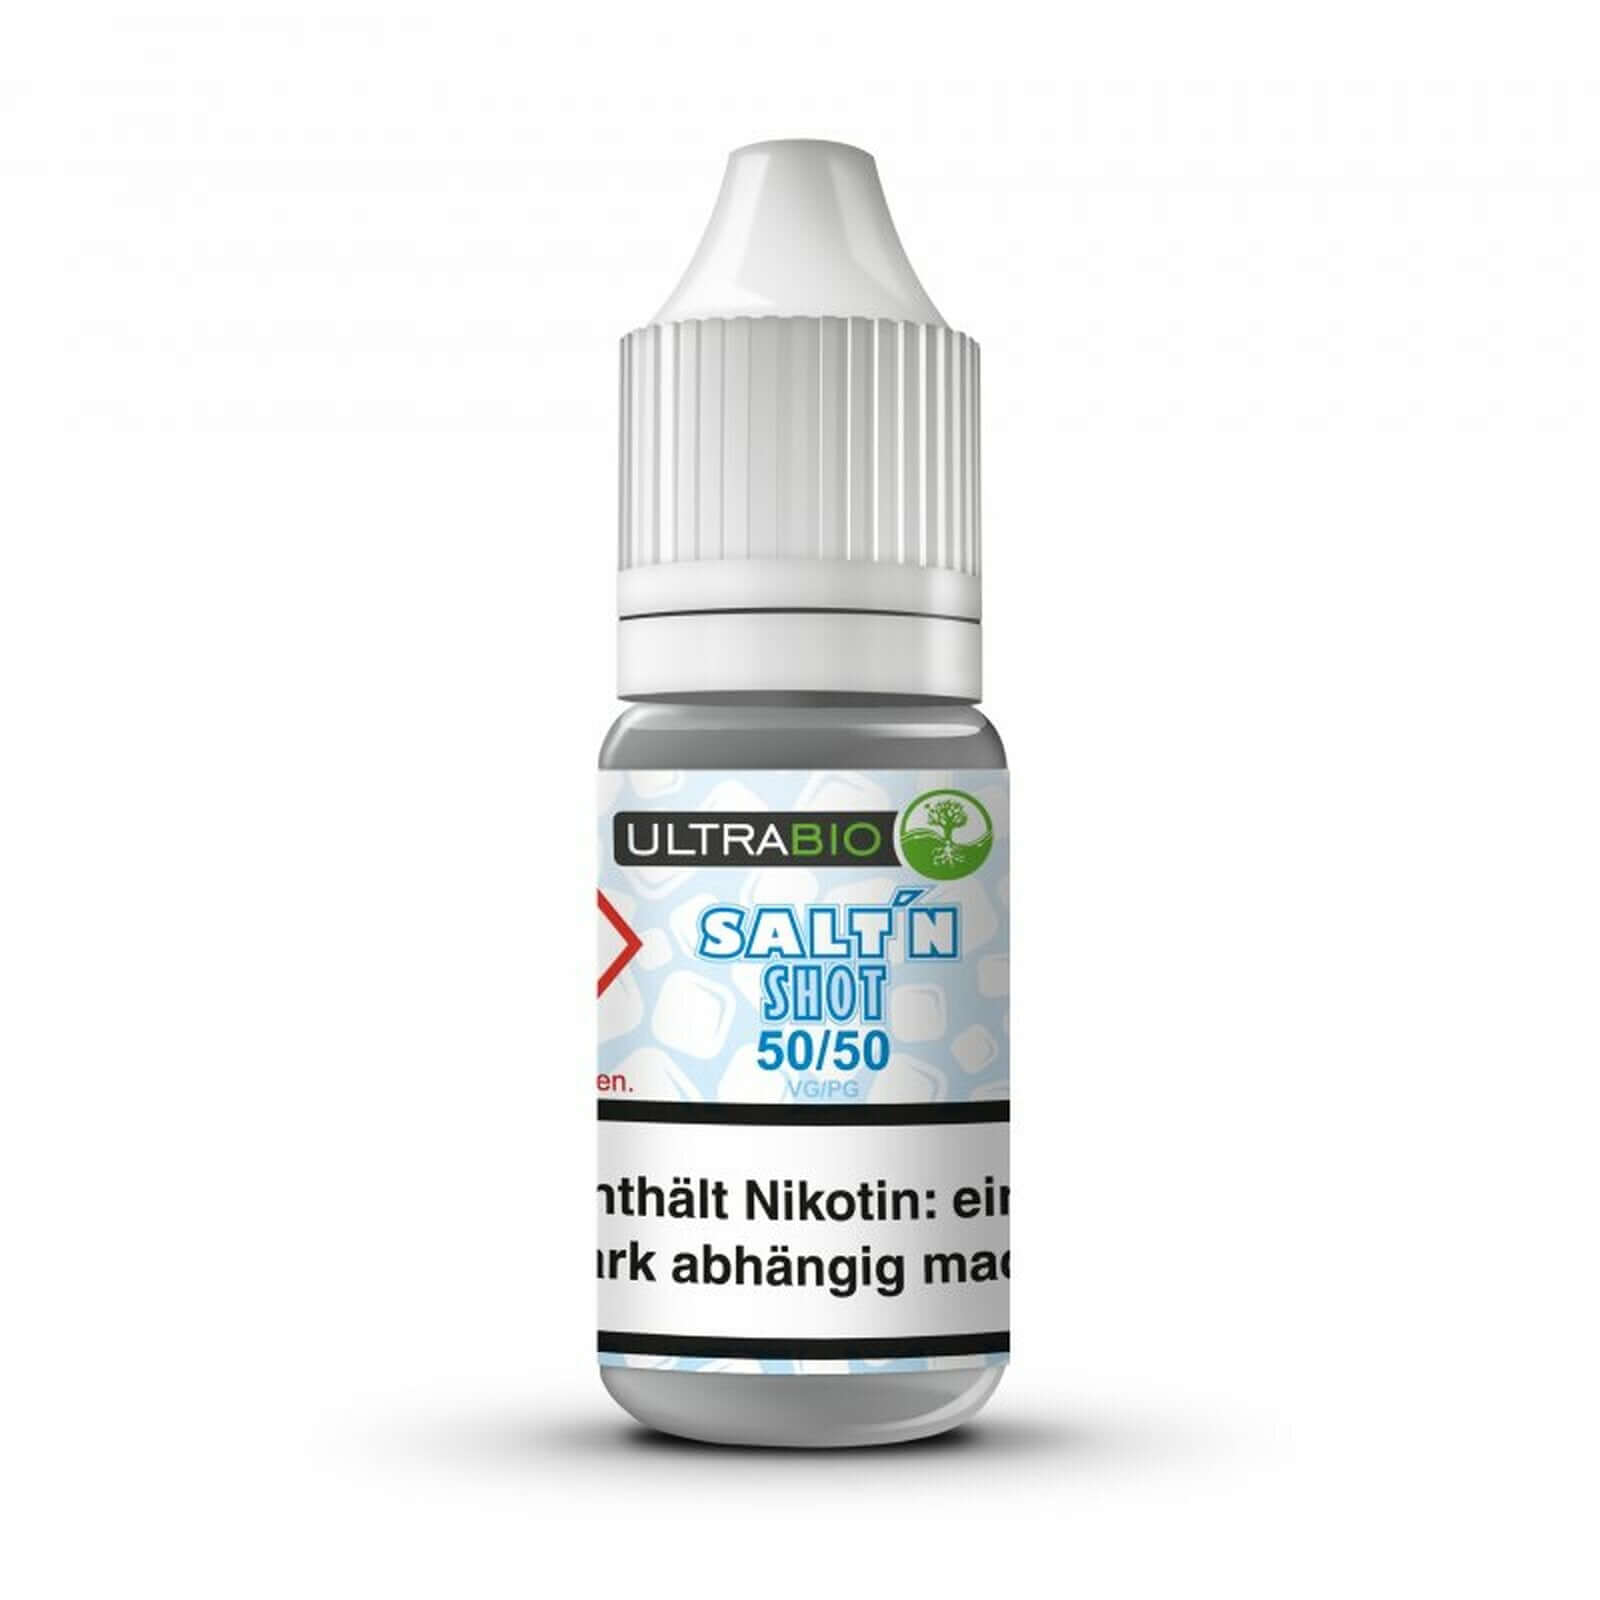 Ultrabio Nikotinsalz Shot - 50/50 20mg 10ml Ultrabio Nikotinsalz Shot - 20mg 70/30 10ml Ultrabio NikotinsalzShots. Etwas weicher als die herkömmlichen Niktotinshots Geschmack: geschmacklich neutral, einfach mit deinem Lieblingsgeschmack kombinieren. Zusam